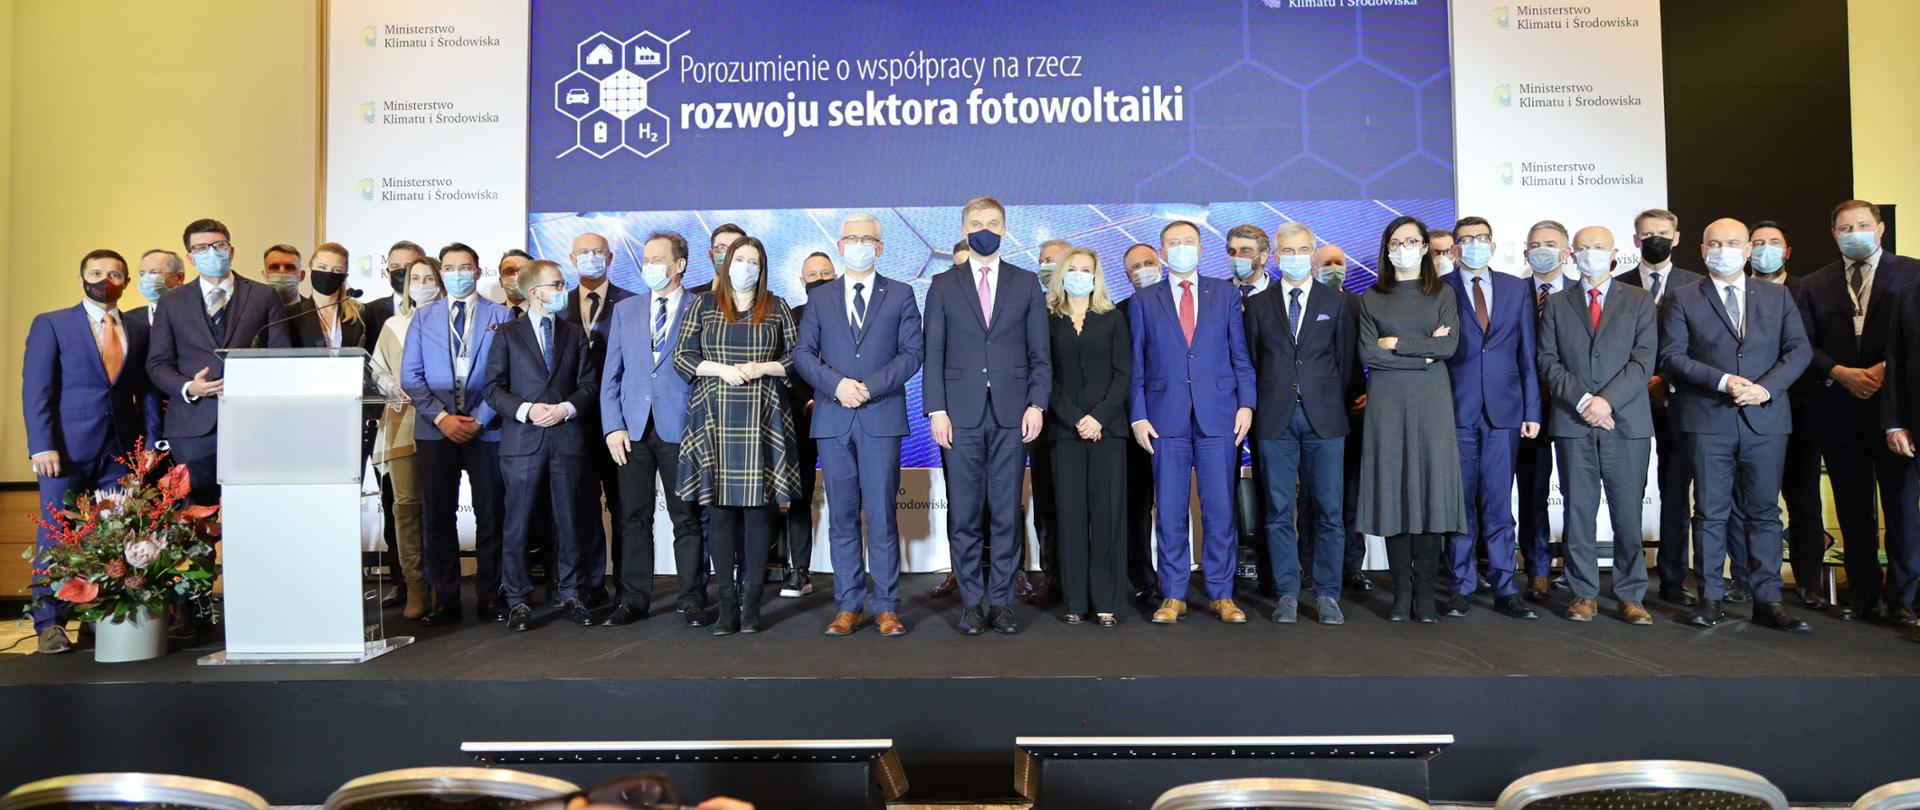 Podpisanie Porozumienia o współpracy na rzecz rozwoju sektora fotowoltaiki z udziałem wiceministra Włodzimierza Bernackiego, uczestnicy uroczystości podpisania porozumienia stoją razem na scenie.